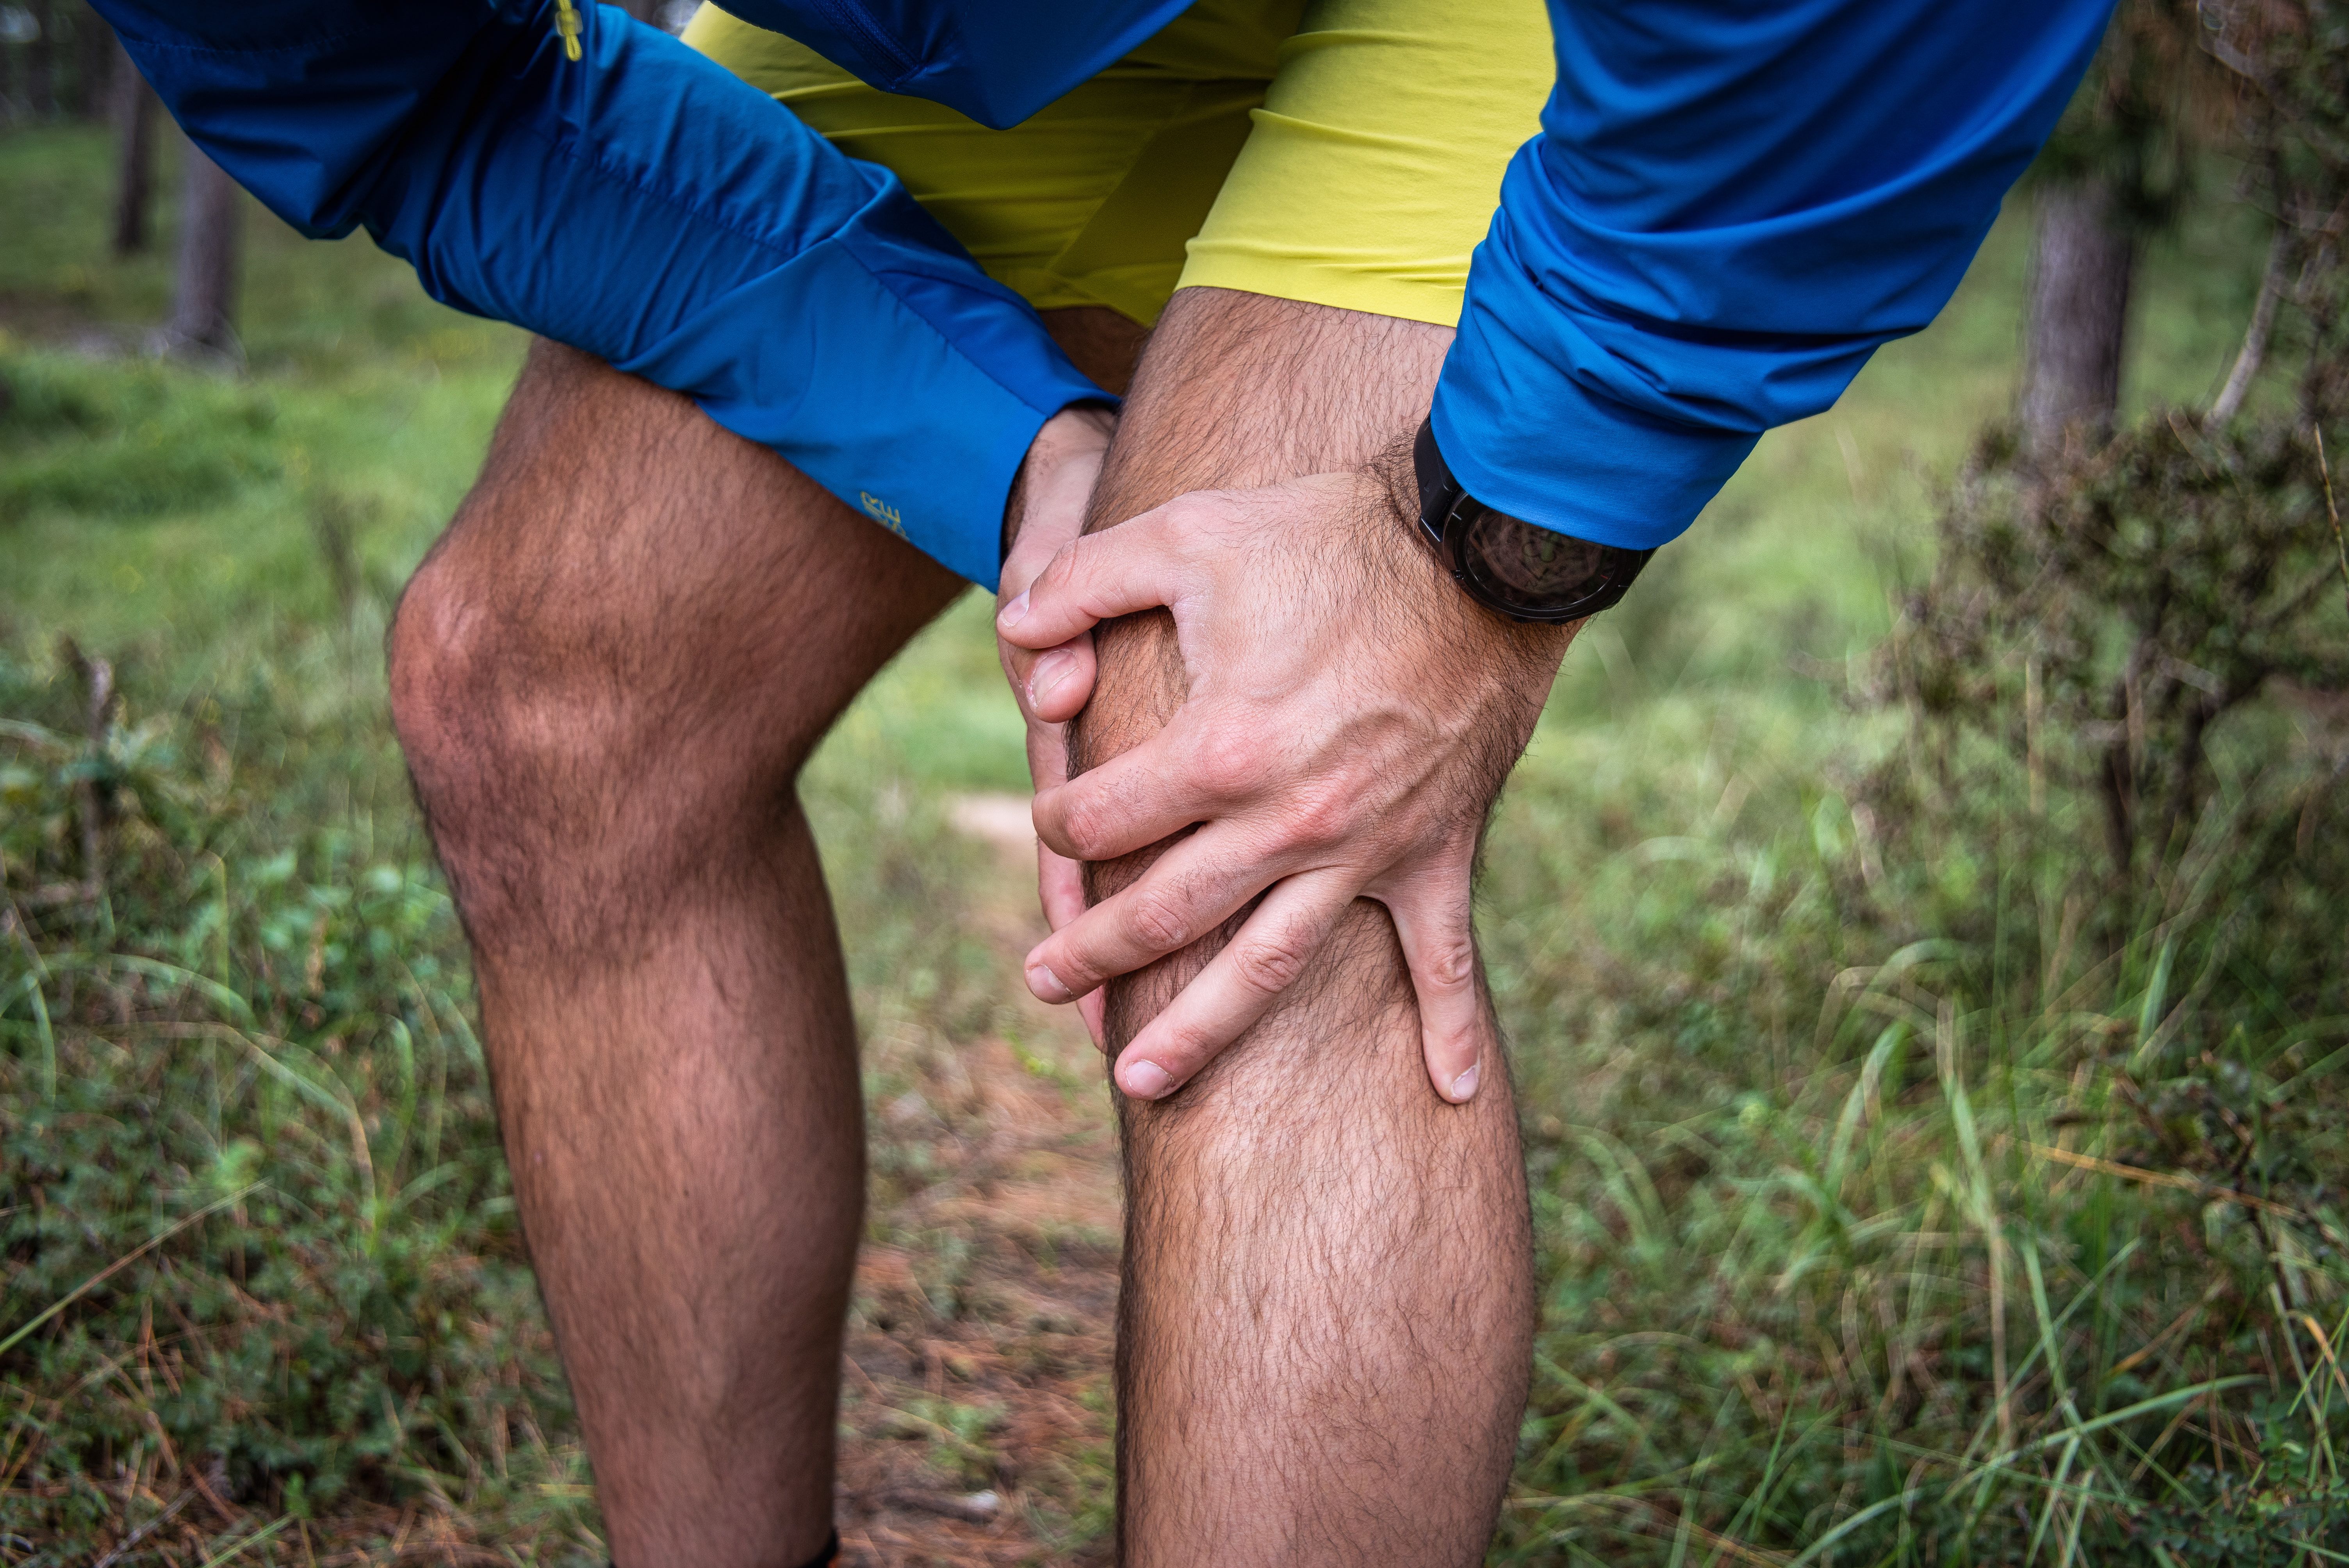 Runner's knee, verhelp jouw pijn tijdens het lopen!